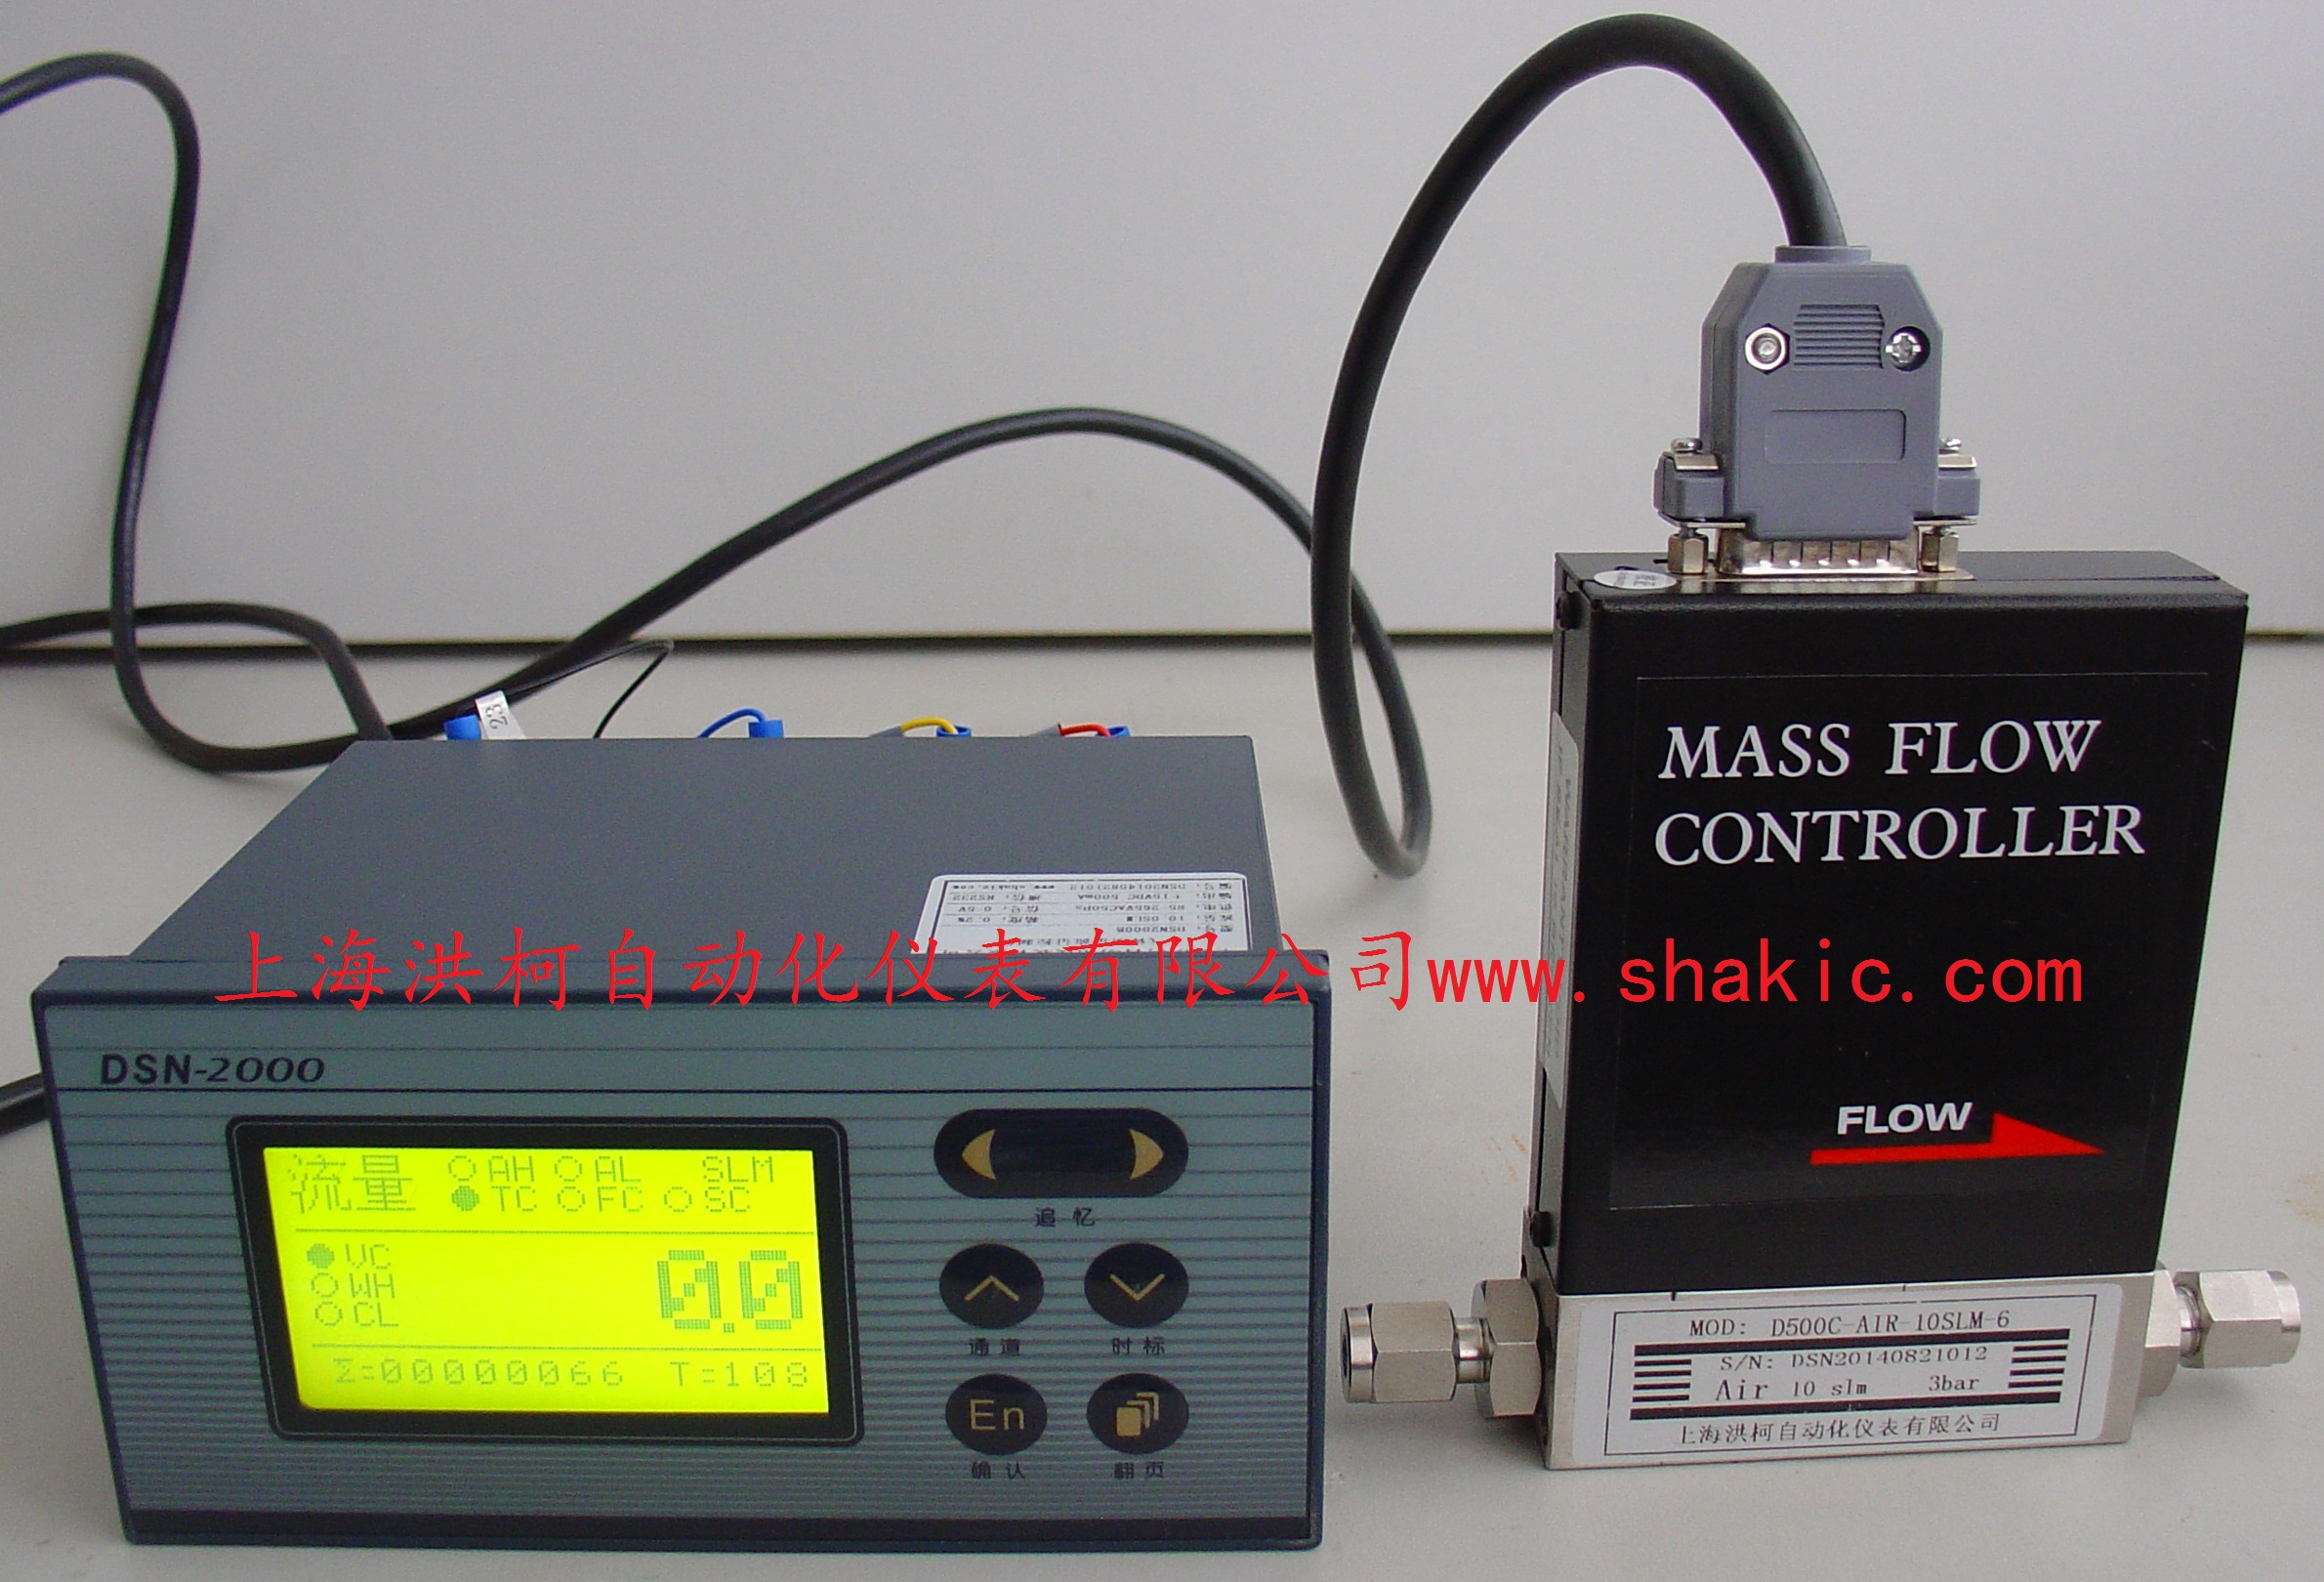 D500系列分体型气体质量流量计/流量控制器及其配套的气体质量流量显示仪/控制仪